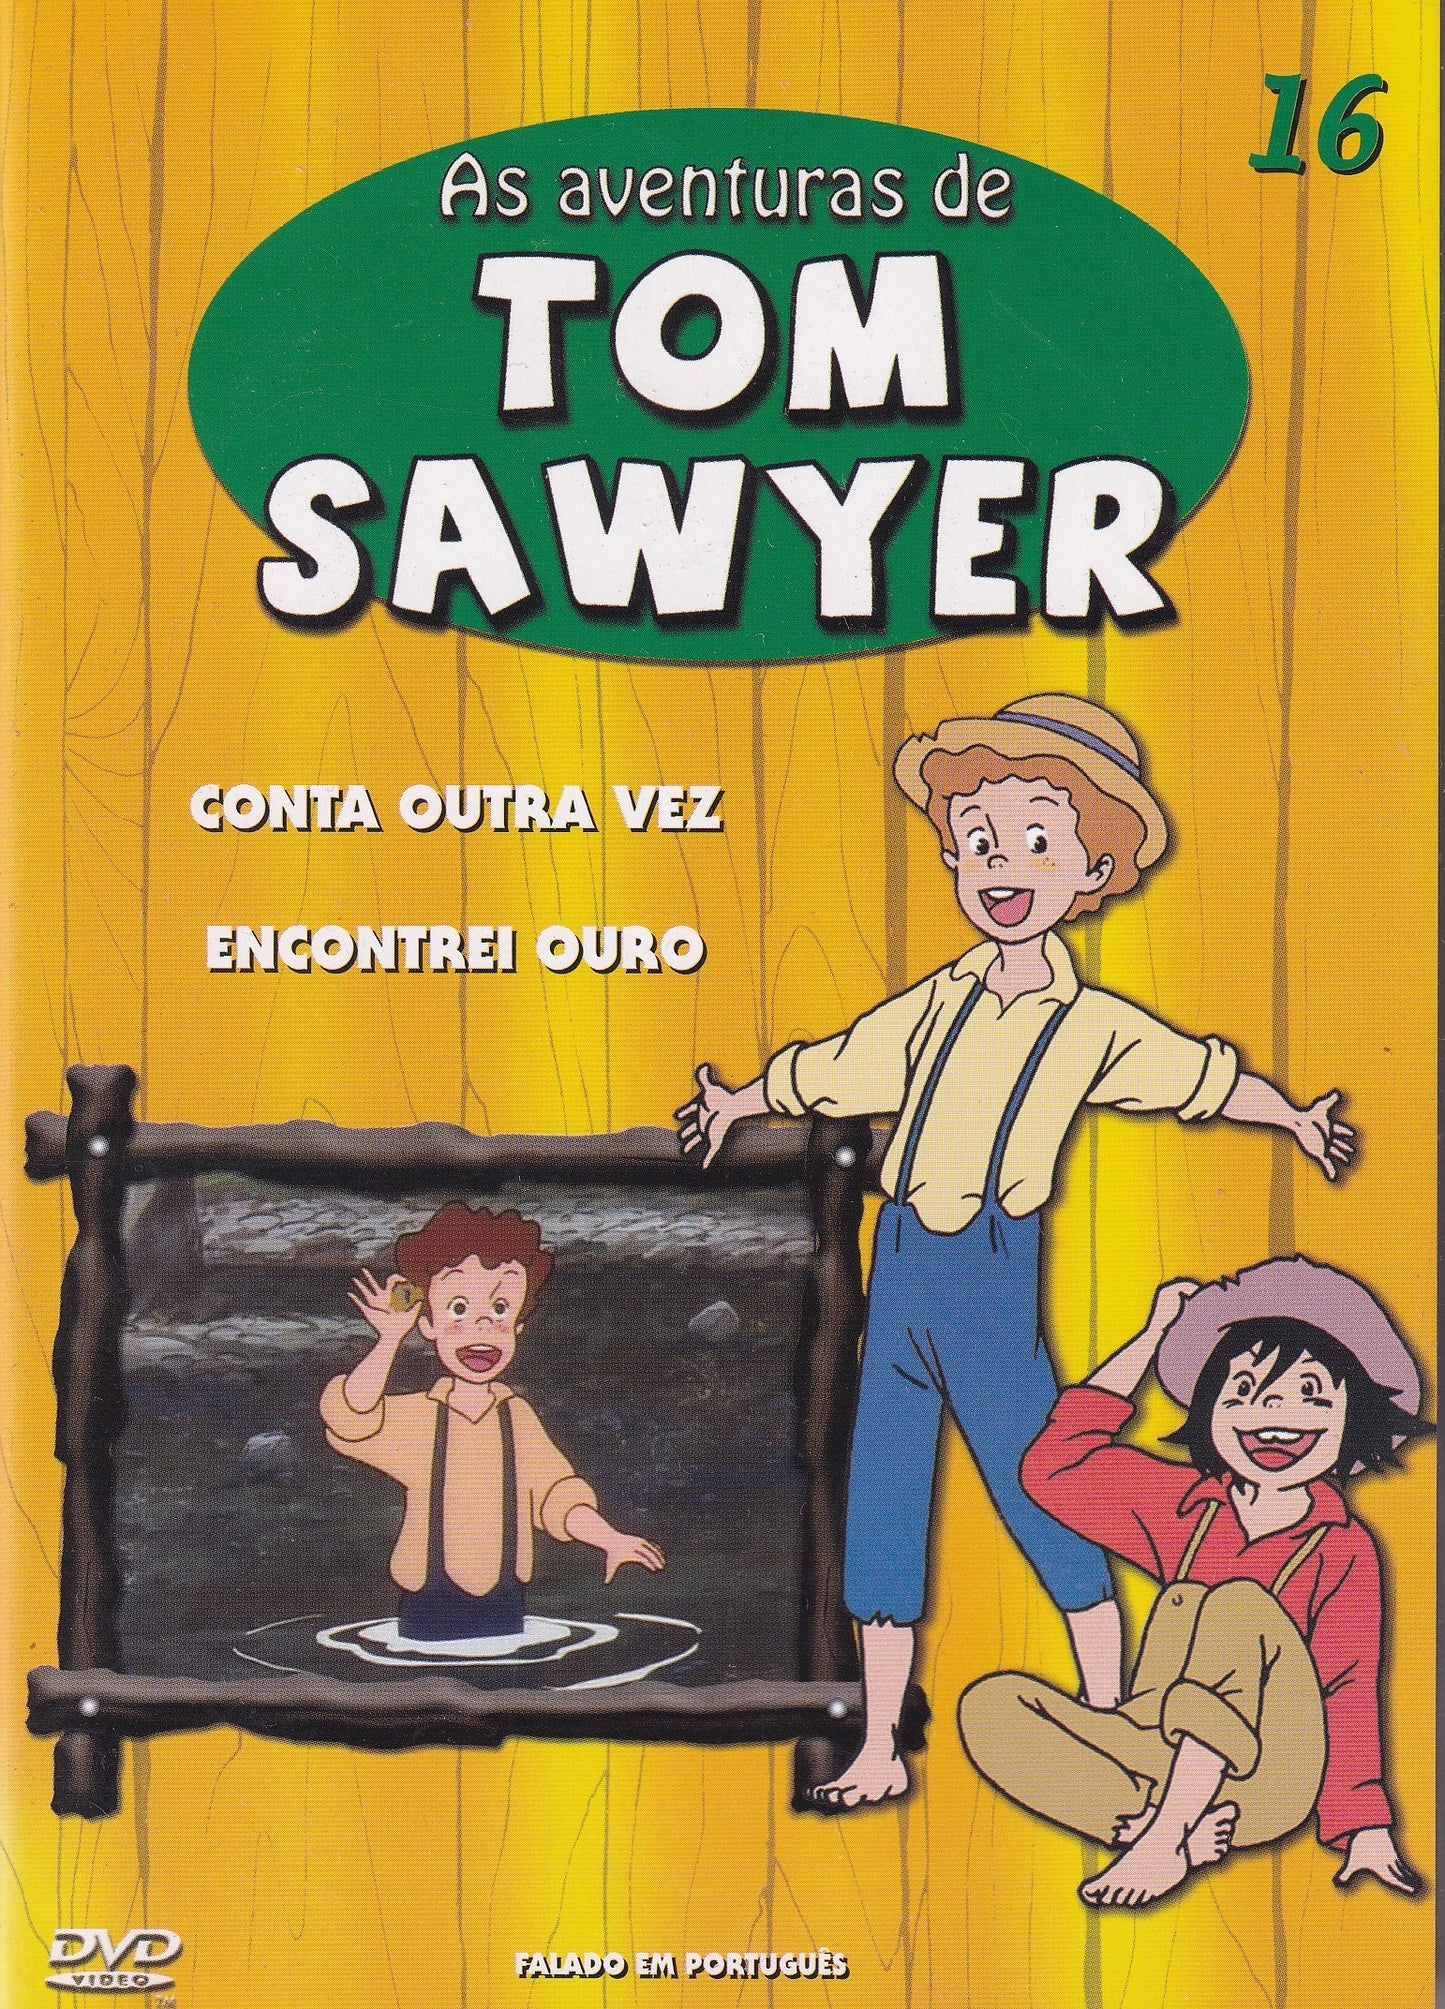 DVD AS AVENTURAS DE TOM SAWYER #16 - CONTA OUTRA VEZ - ENCONTREI OURO - USADO